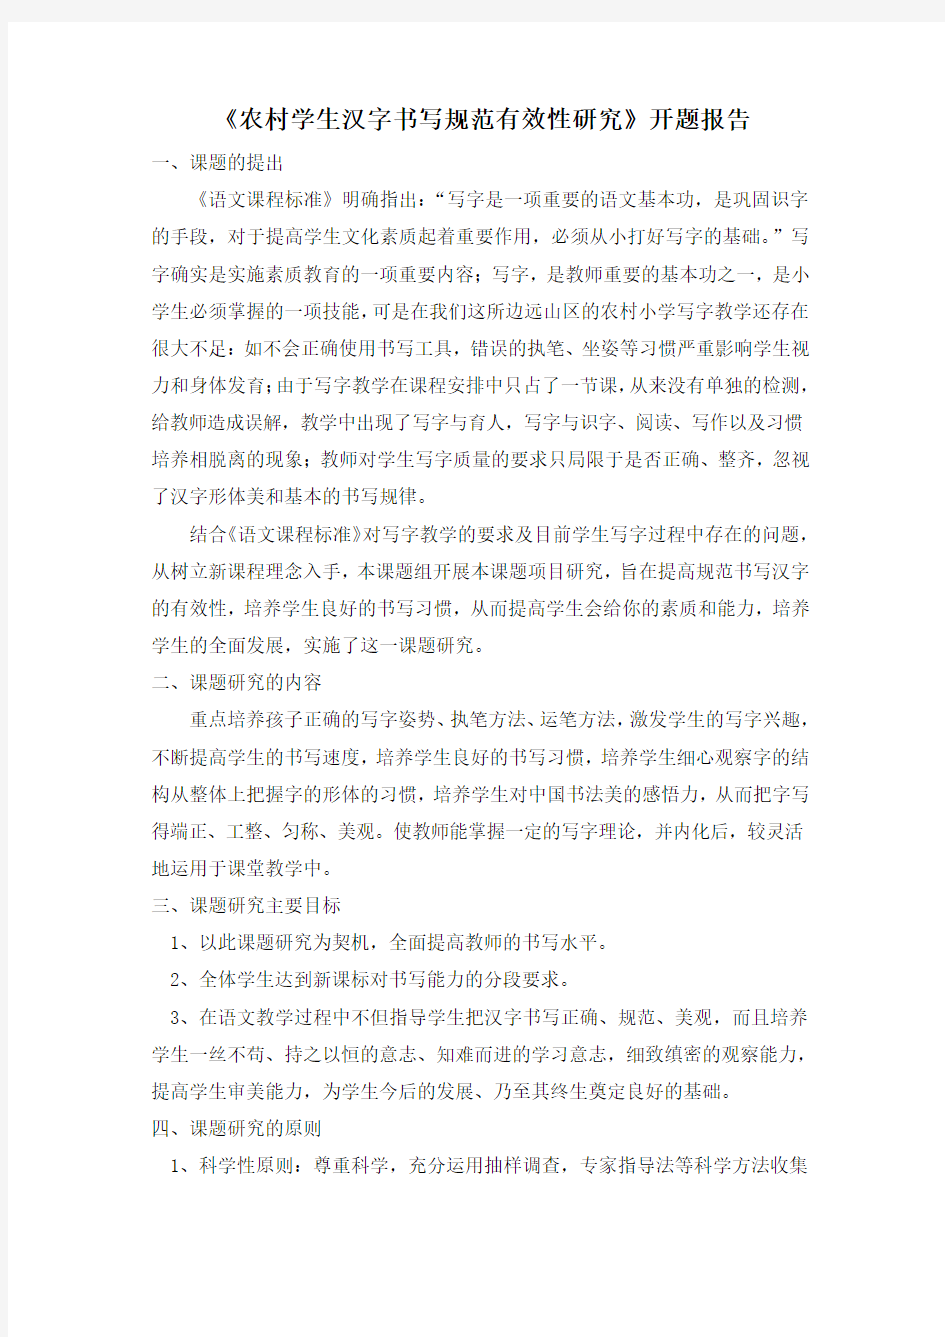 农村学生汉字书写规范有效性研究 开题报告